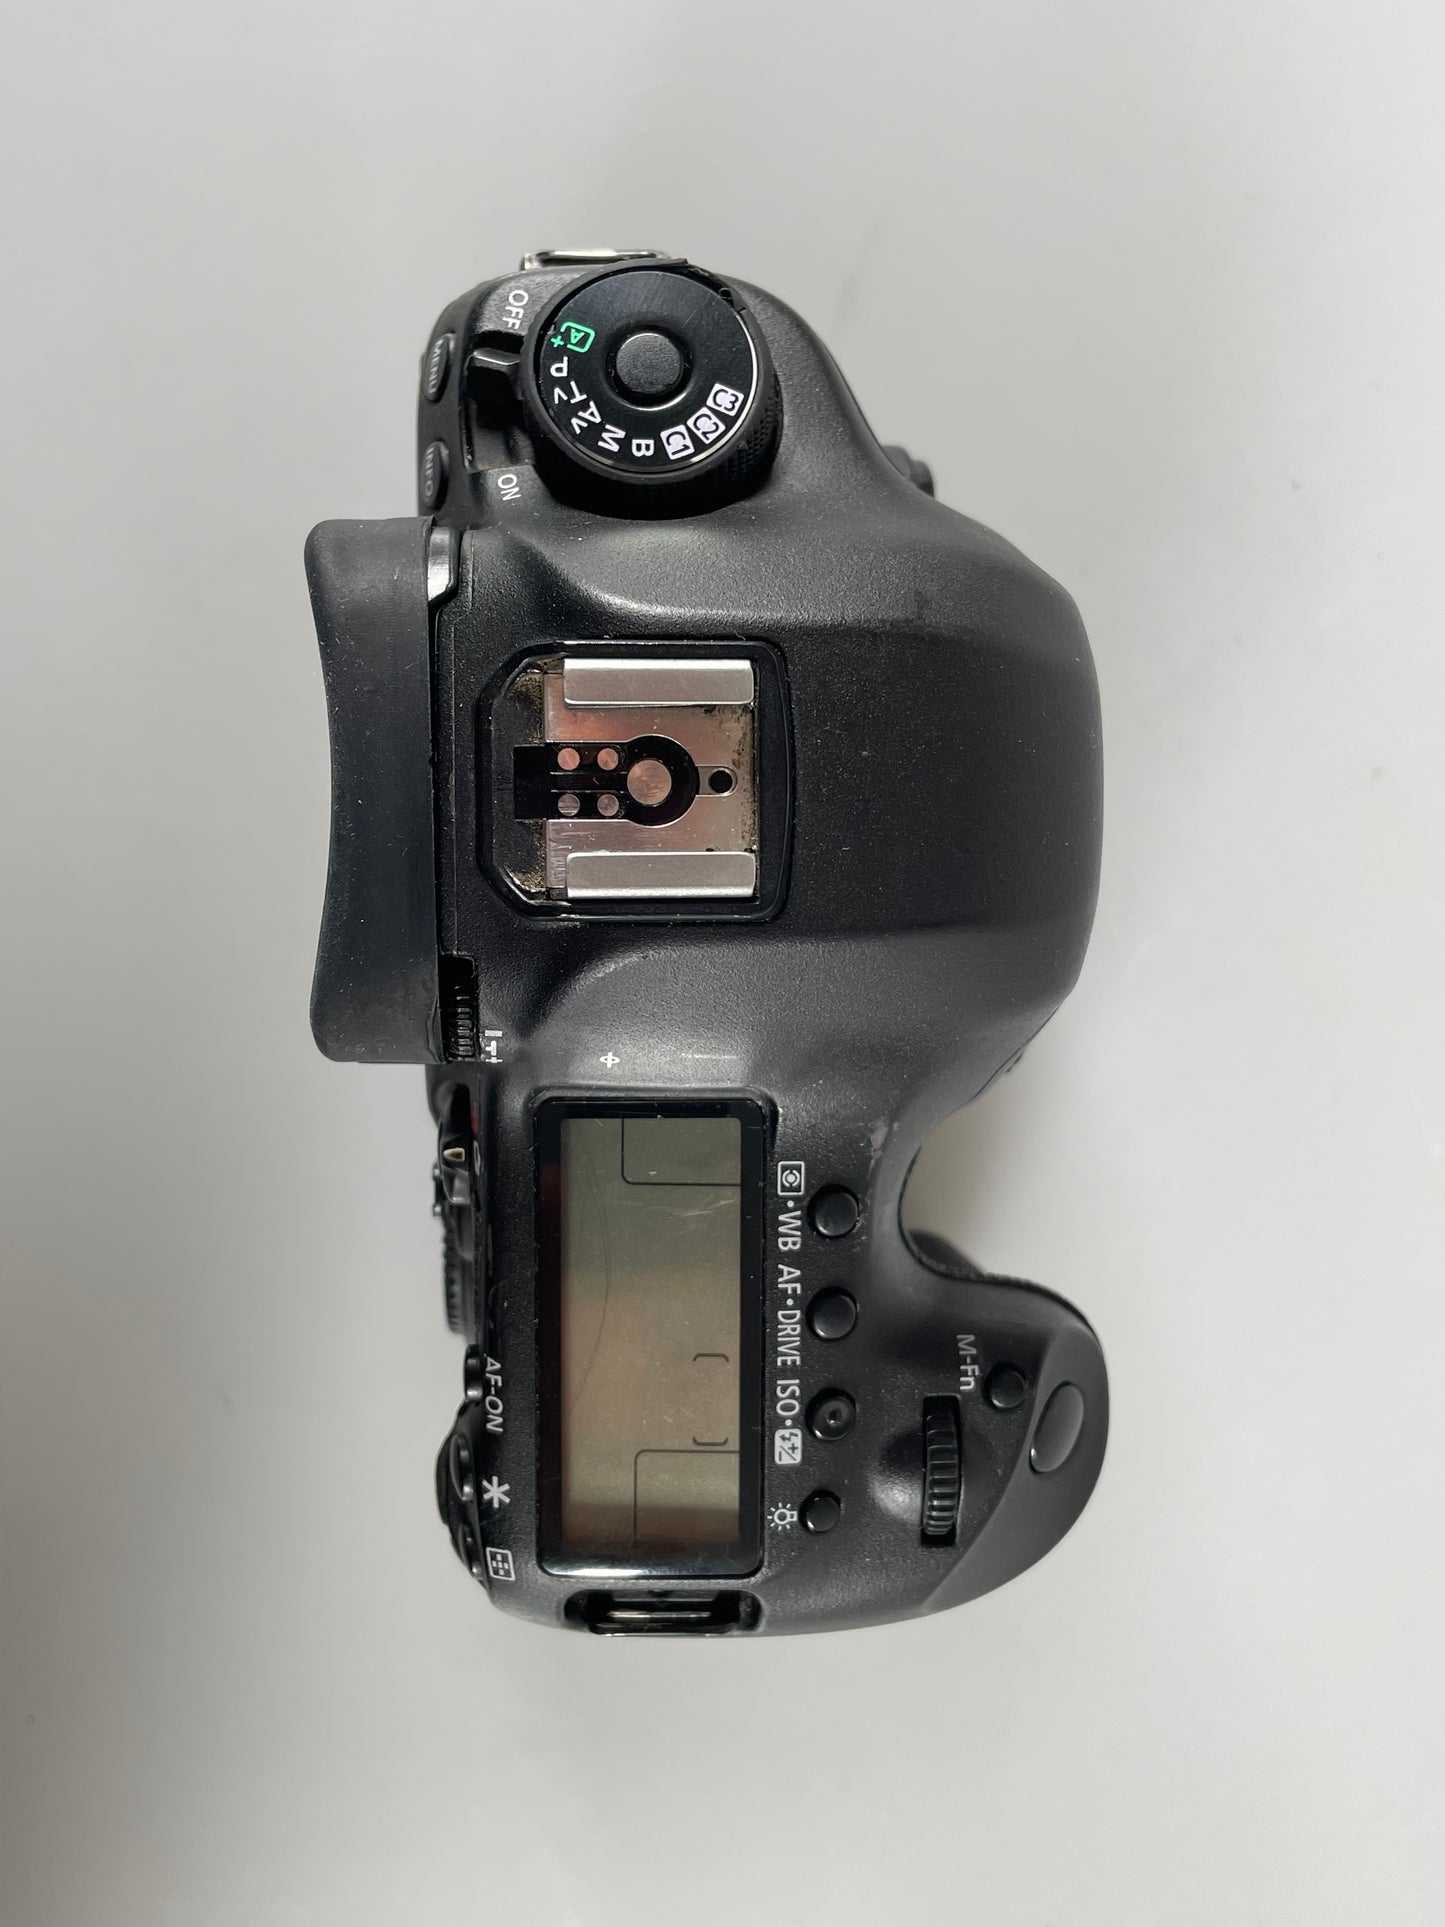 Canon 5d mark iii digital camera SLR Body full frame 310k